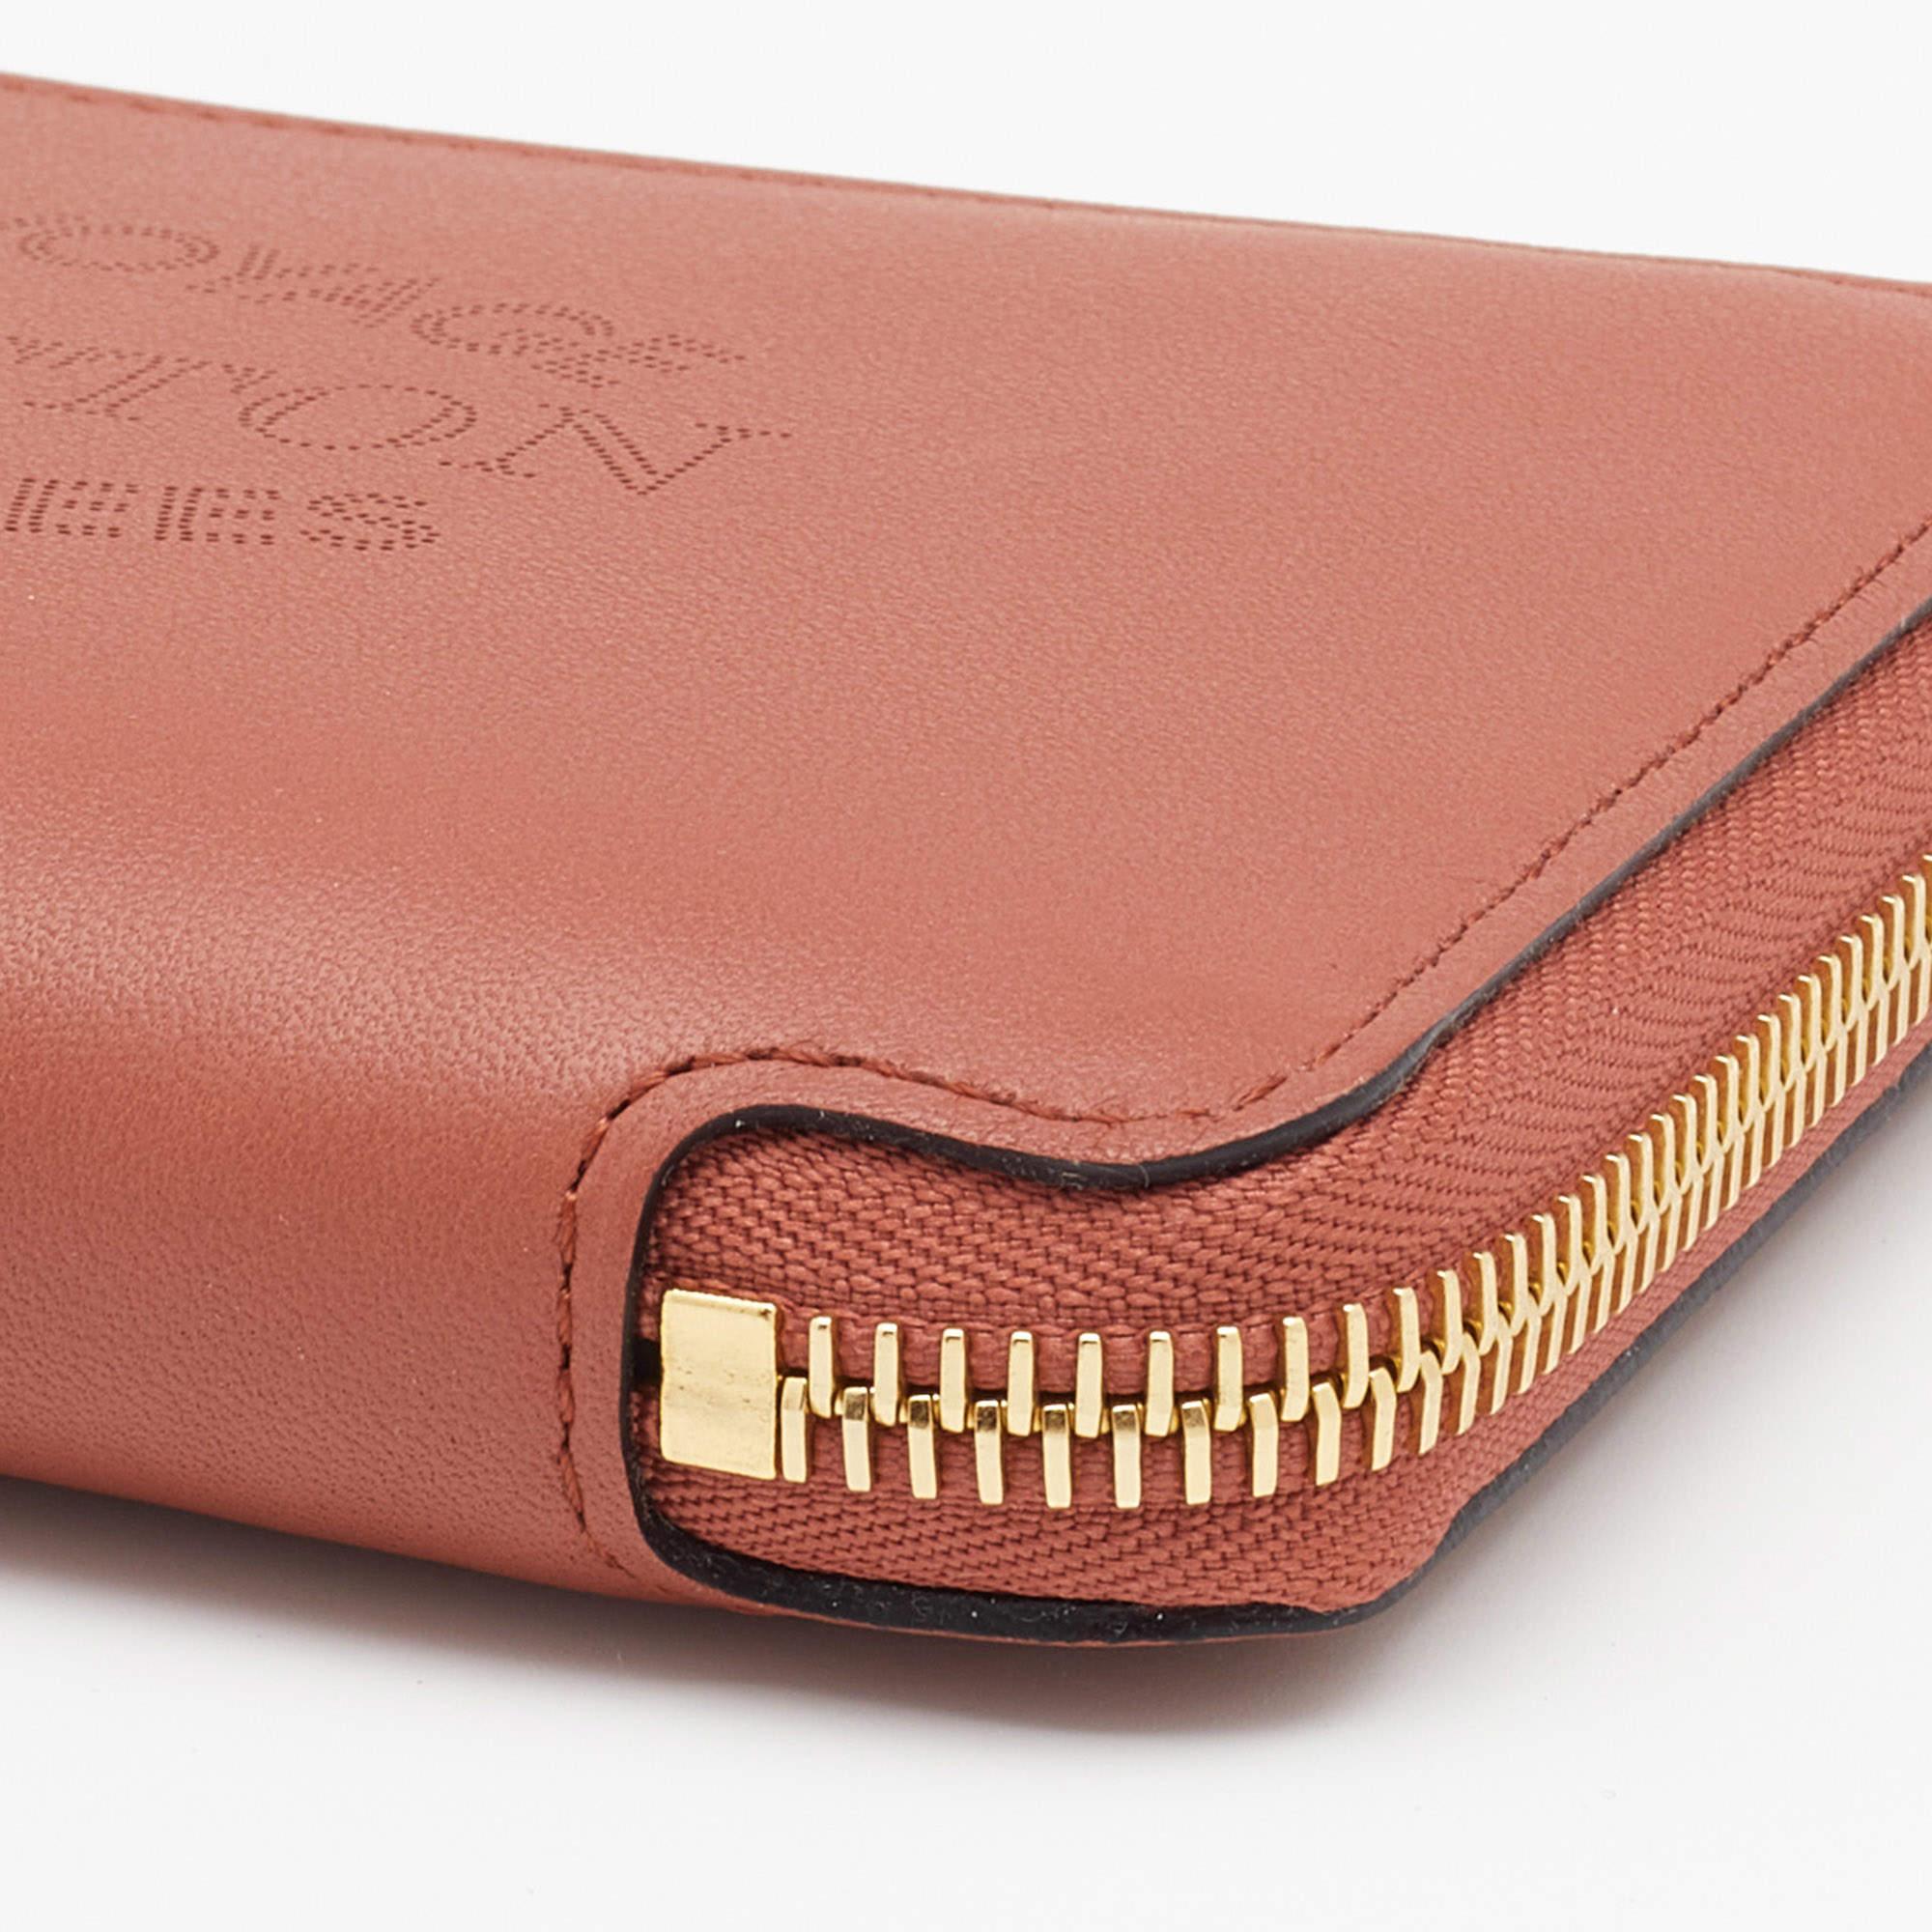 Louis Vuitton Brick Red Leather Article De Voyage Zippy Wallet 3